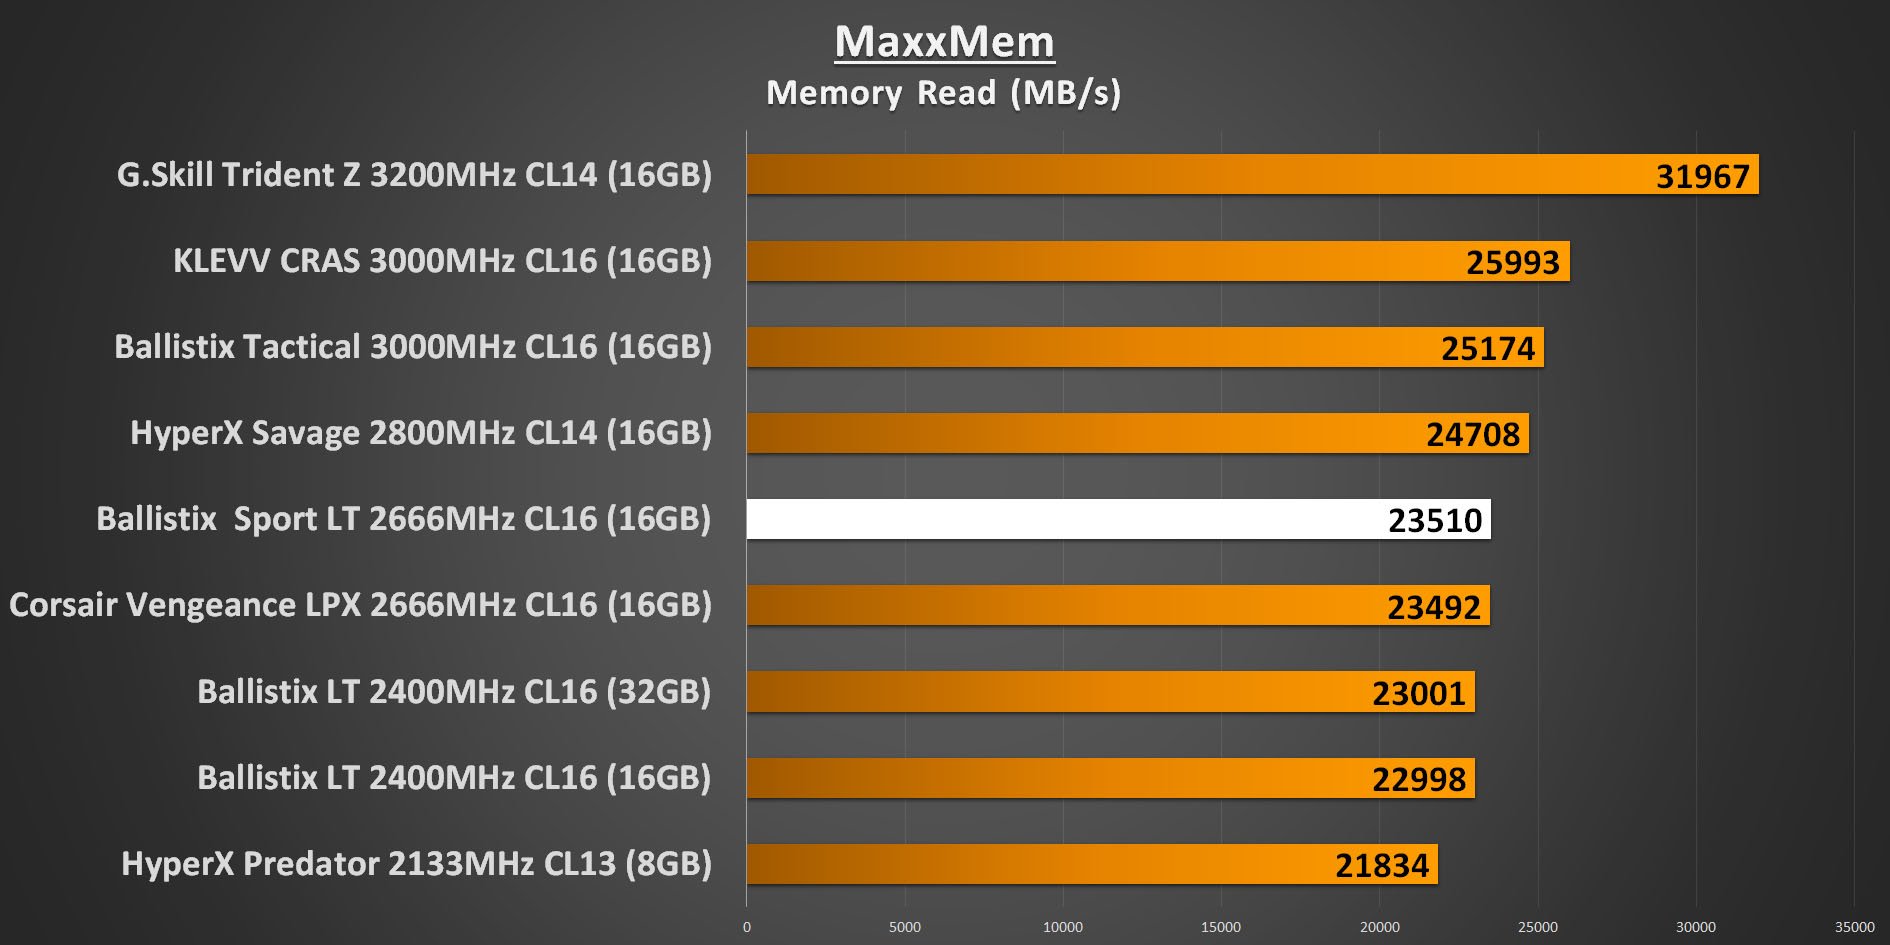 Ballistix Sport LT 2666MHz - MaxxMem Memory Read Performance